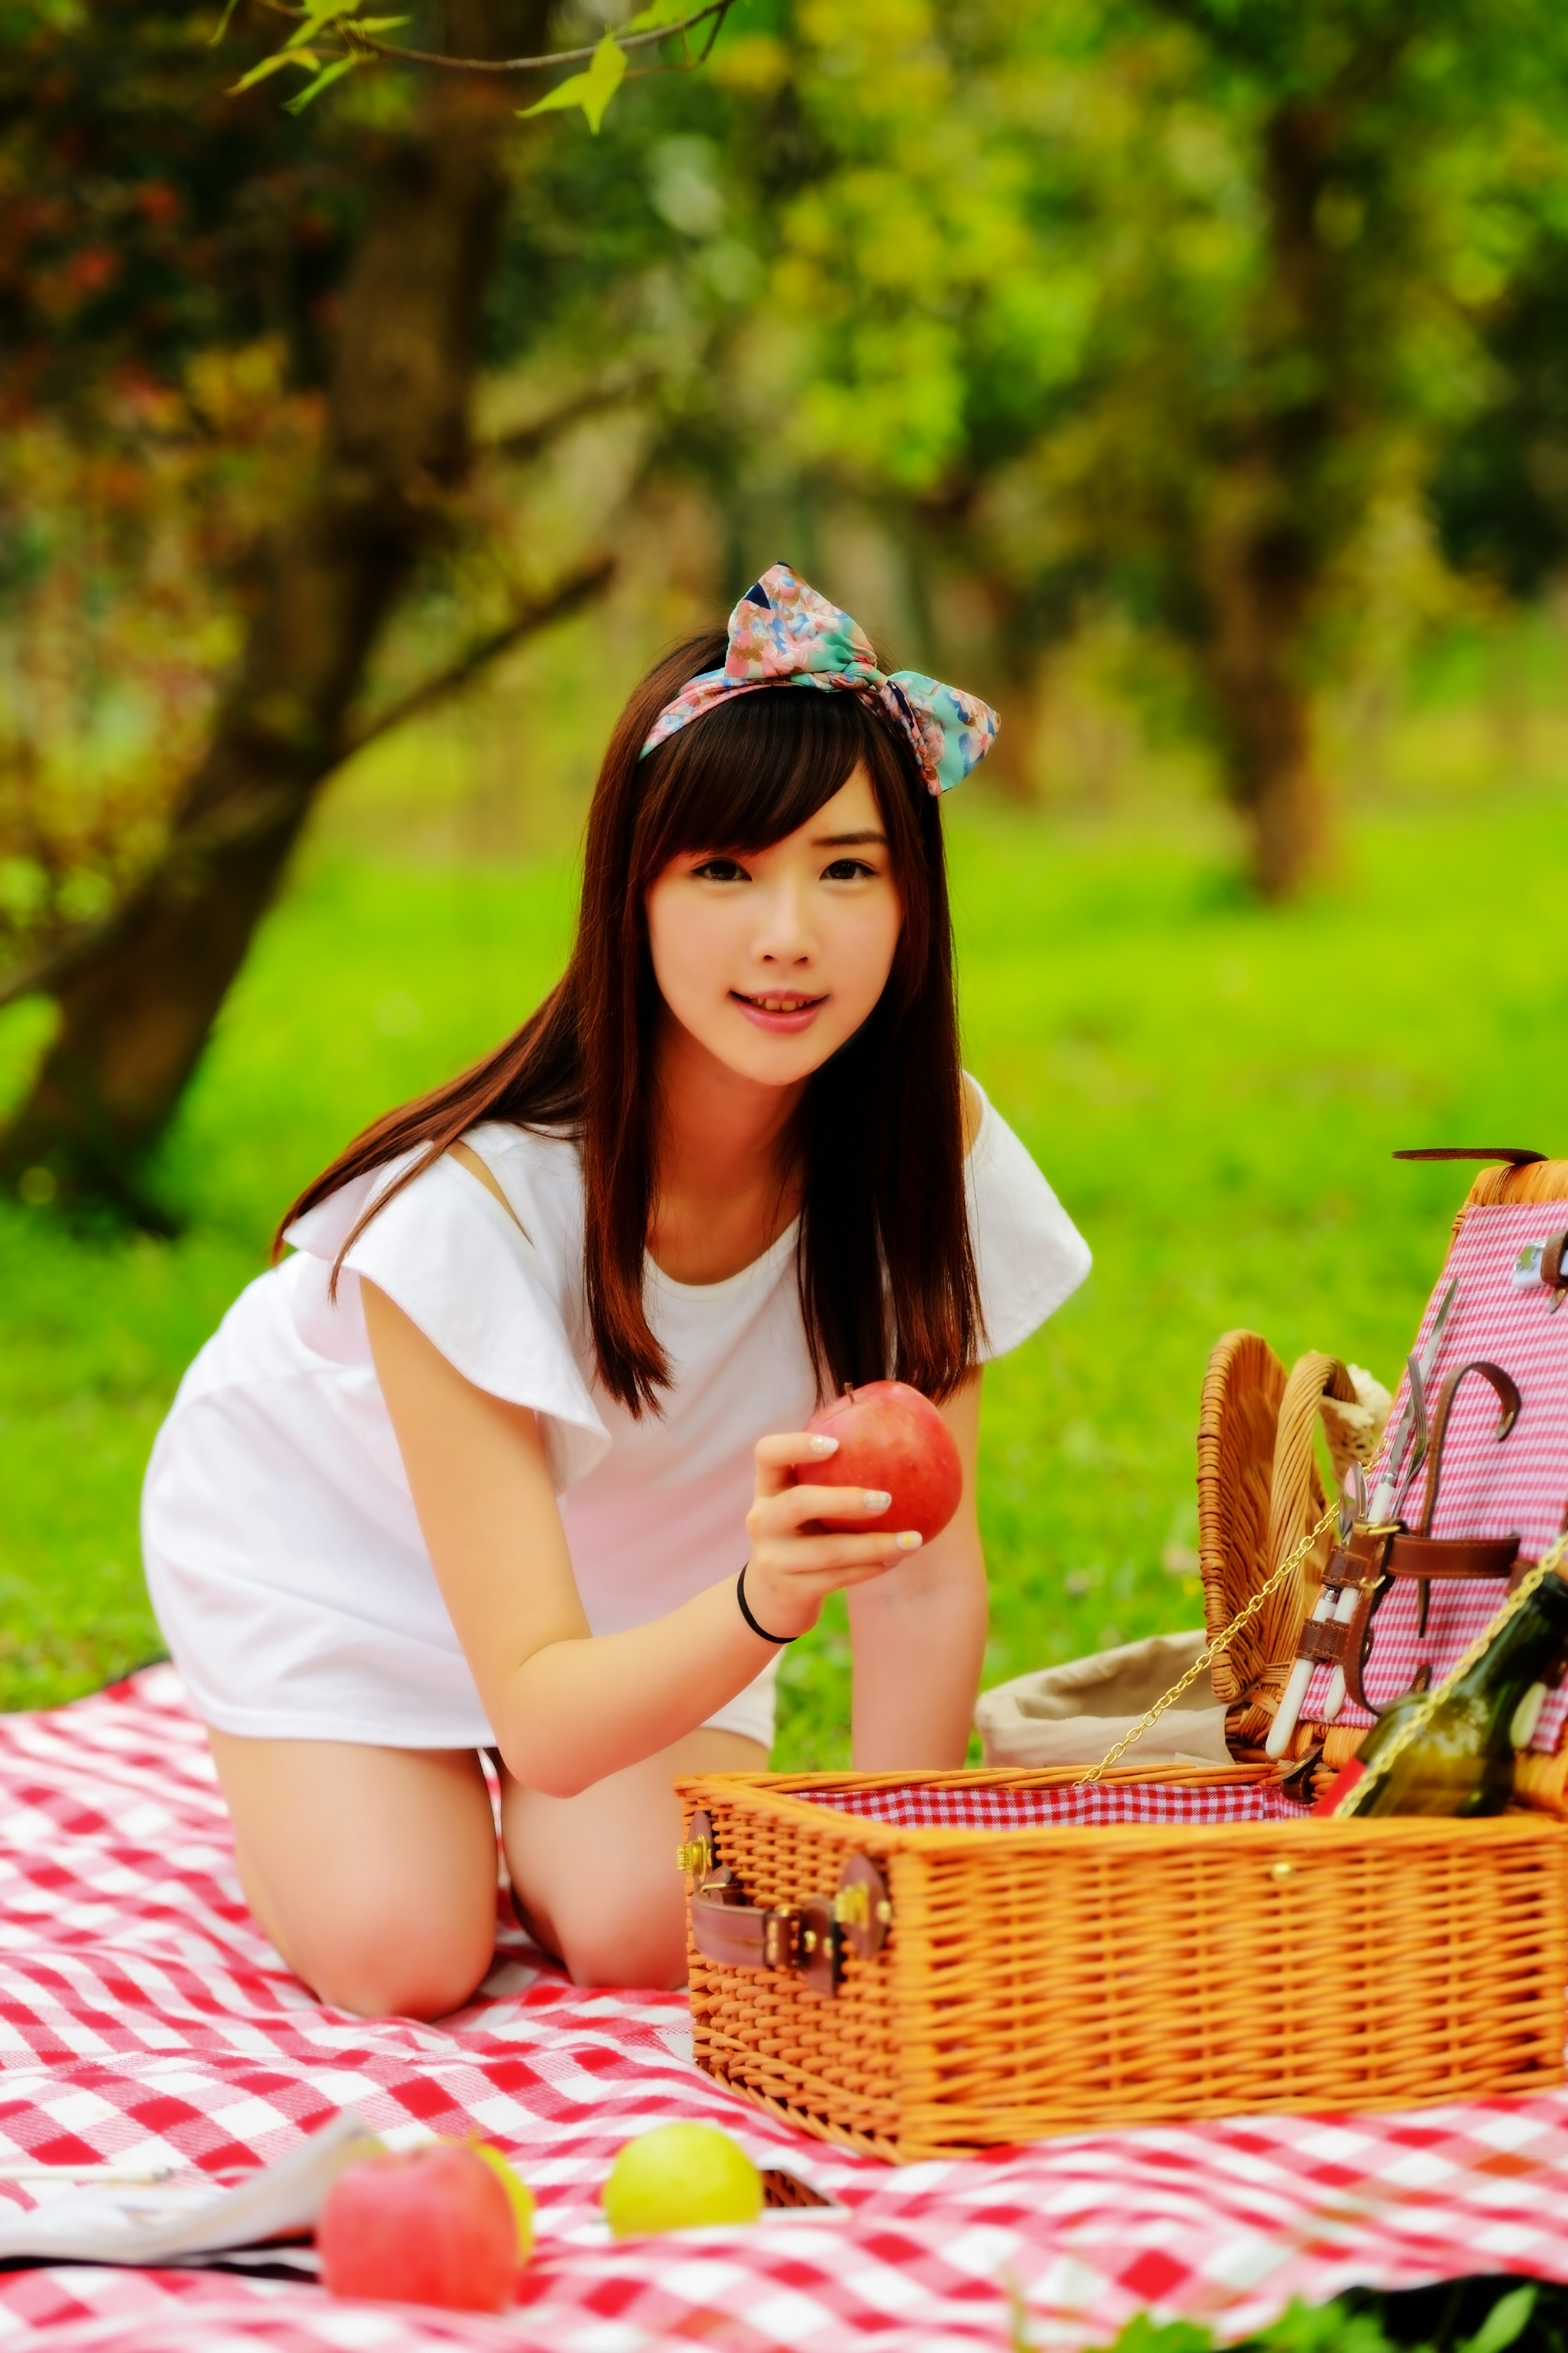 People 3766x5650 Asian brunette women picnic park women outdoors apples headband dress